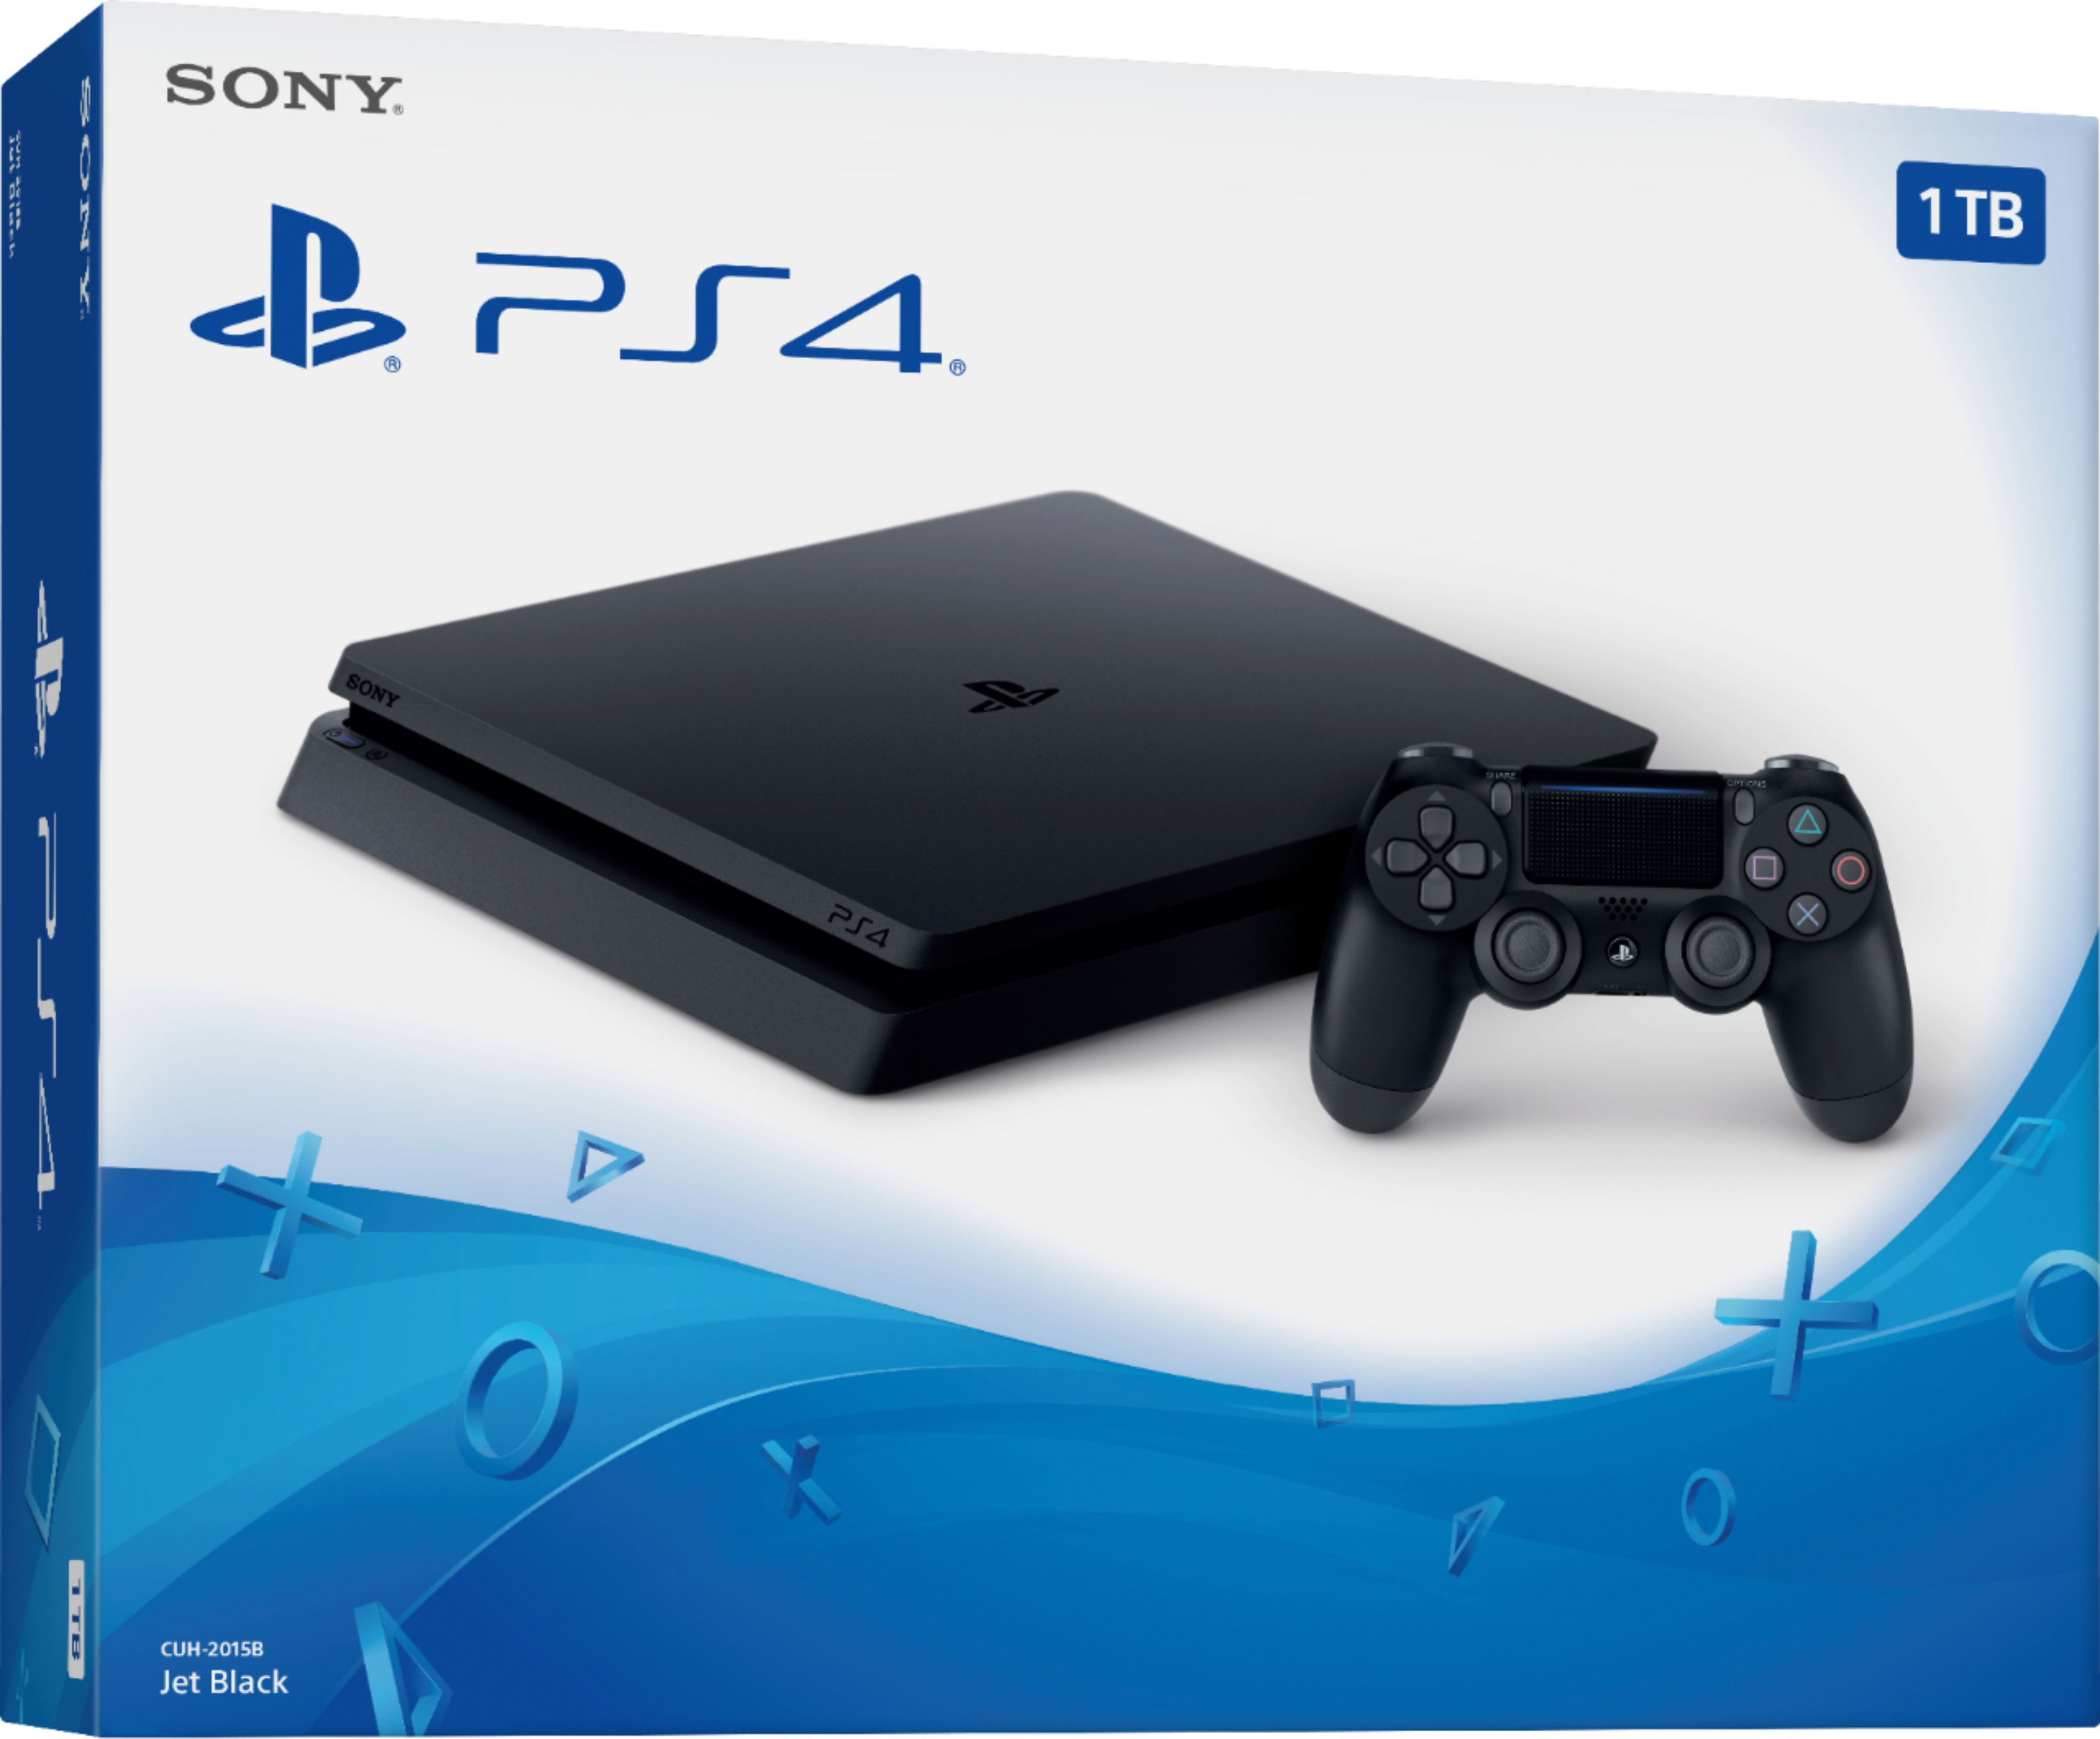 テレビ/映像機器 その他 Sony PlayStation 4 1TB Console Black 3002337 - Best Buy